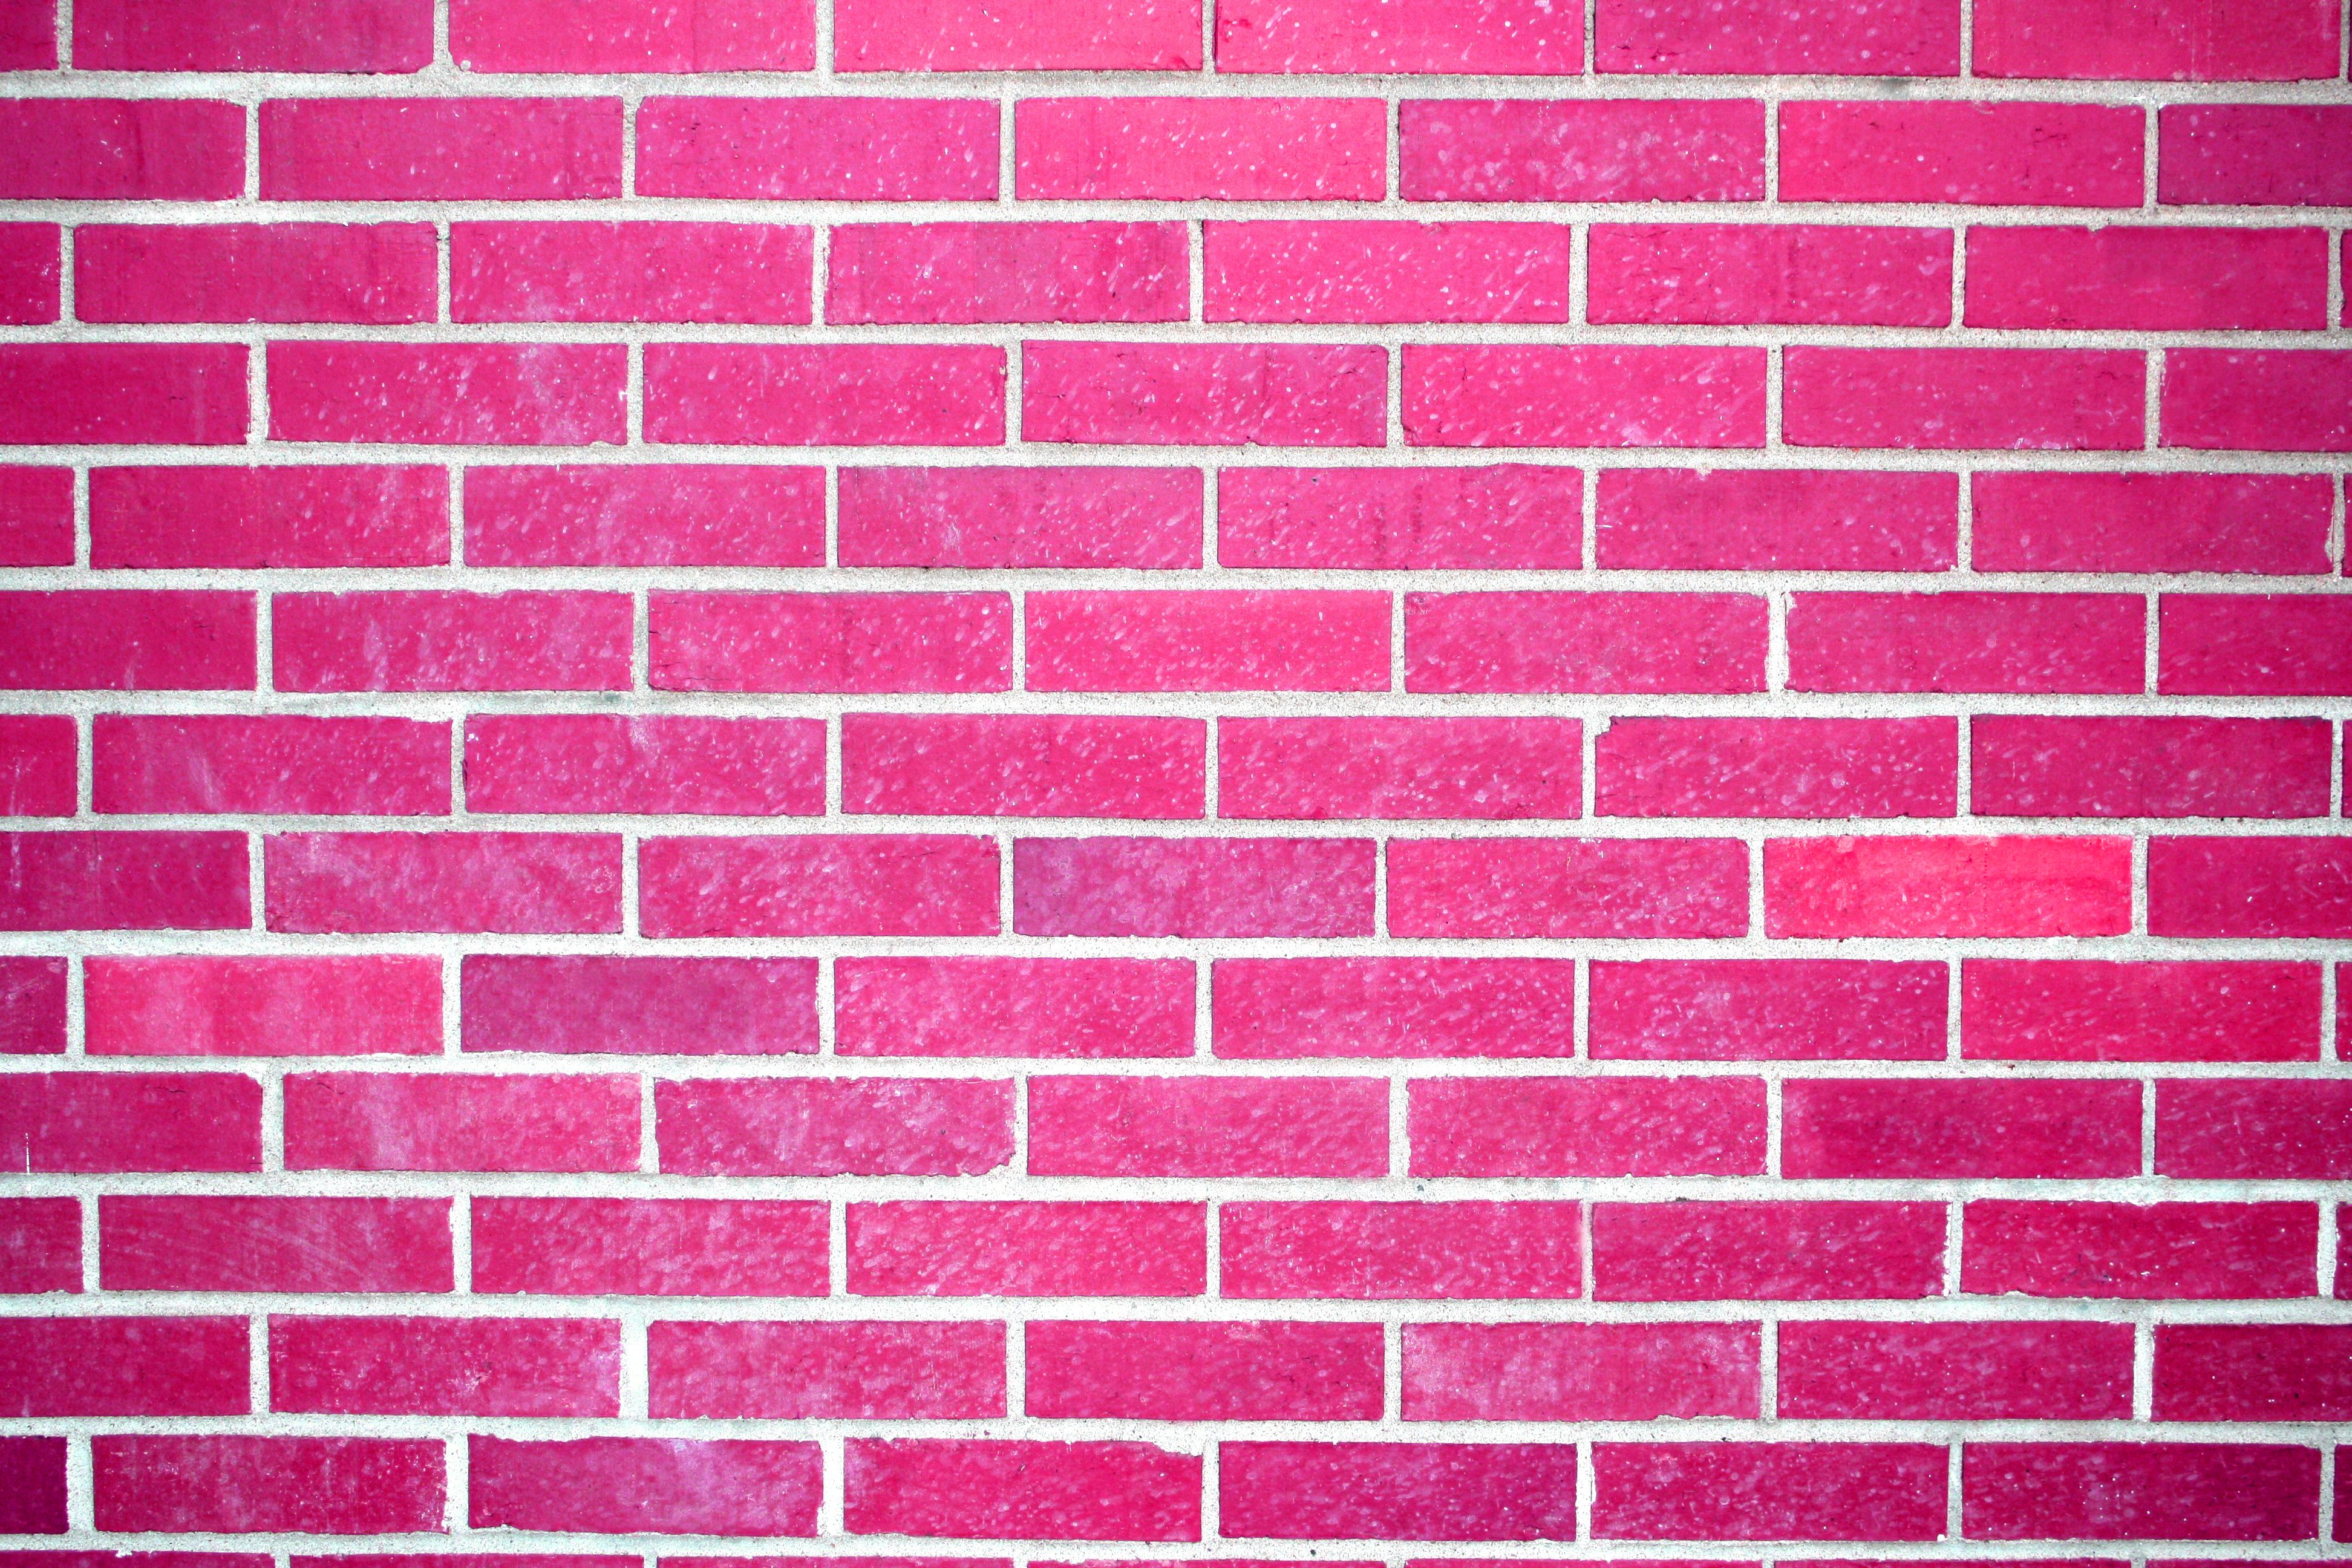 Với hình nền tường gạch hồng, bạn sẽ cảm nhận được sự ấm cúng và thân quen, nhưng vẫn không kém phần sang trọng. Mẫu hoa văn tường gạch hồng nổi bật này sẽ giúp bạn tạo ra một không gian riêng đầy phong cách và thể hiện được sự cá tính của bản thân.